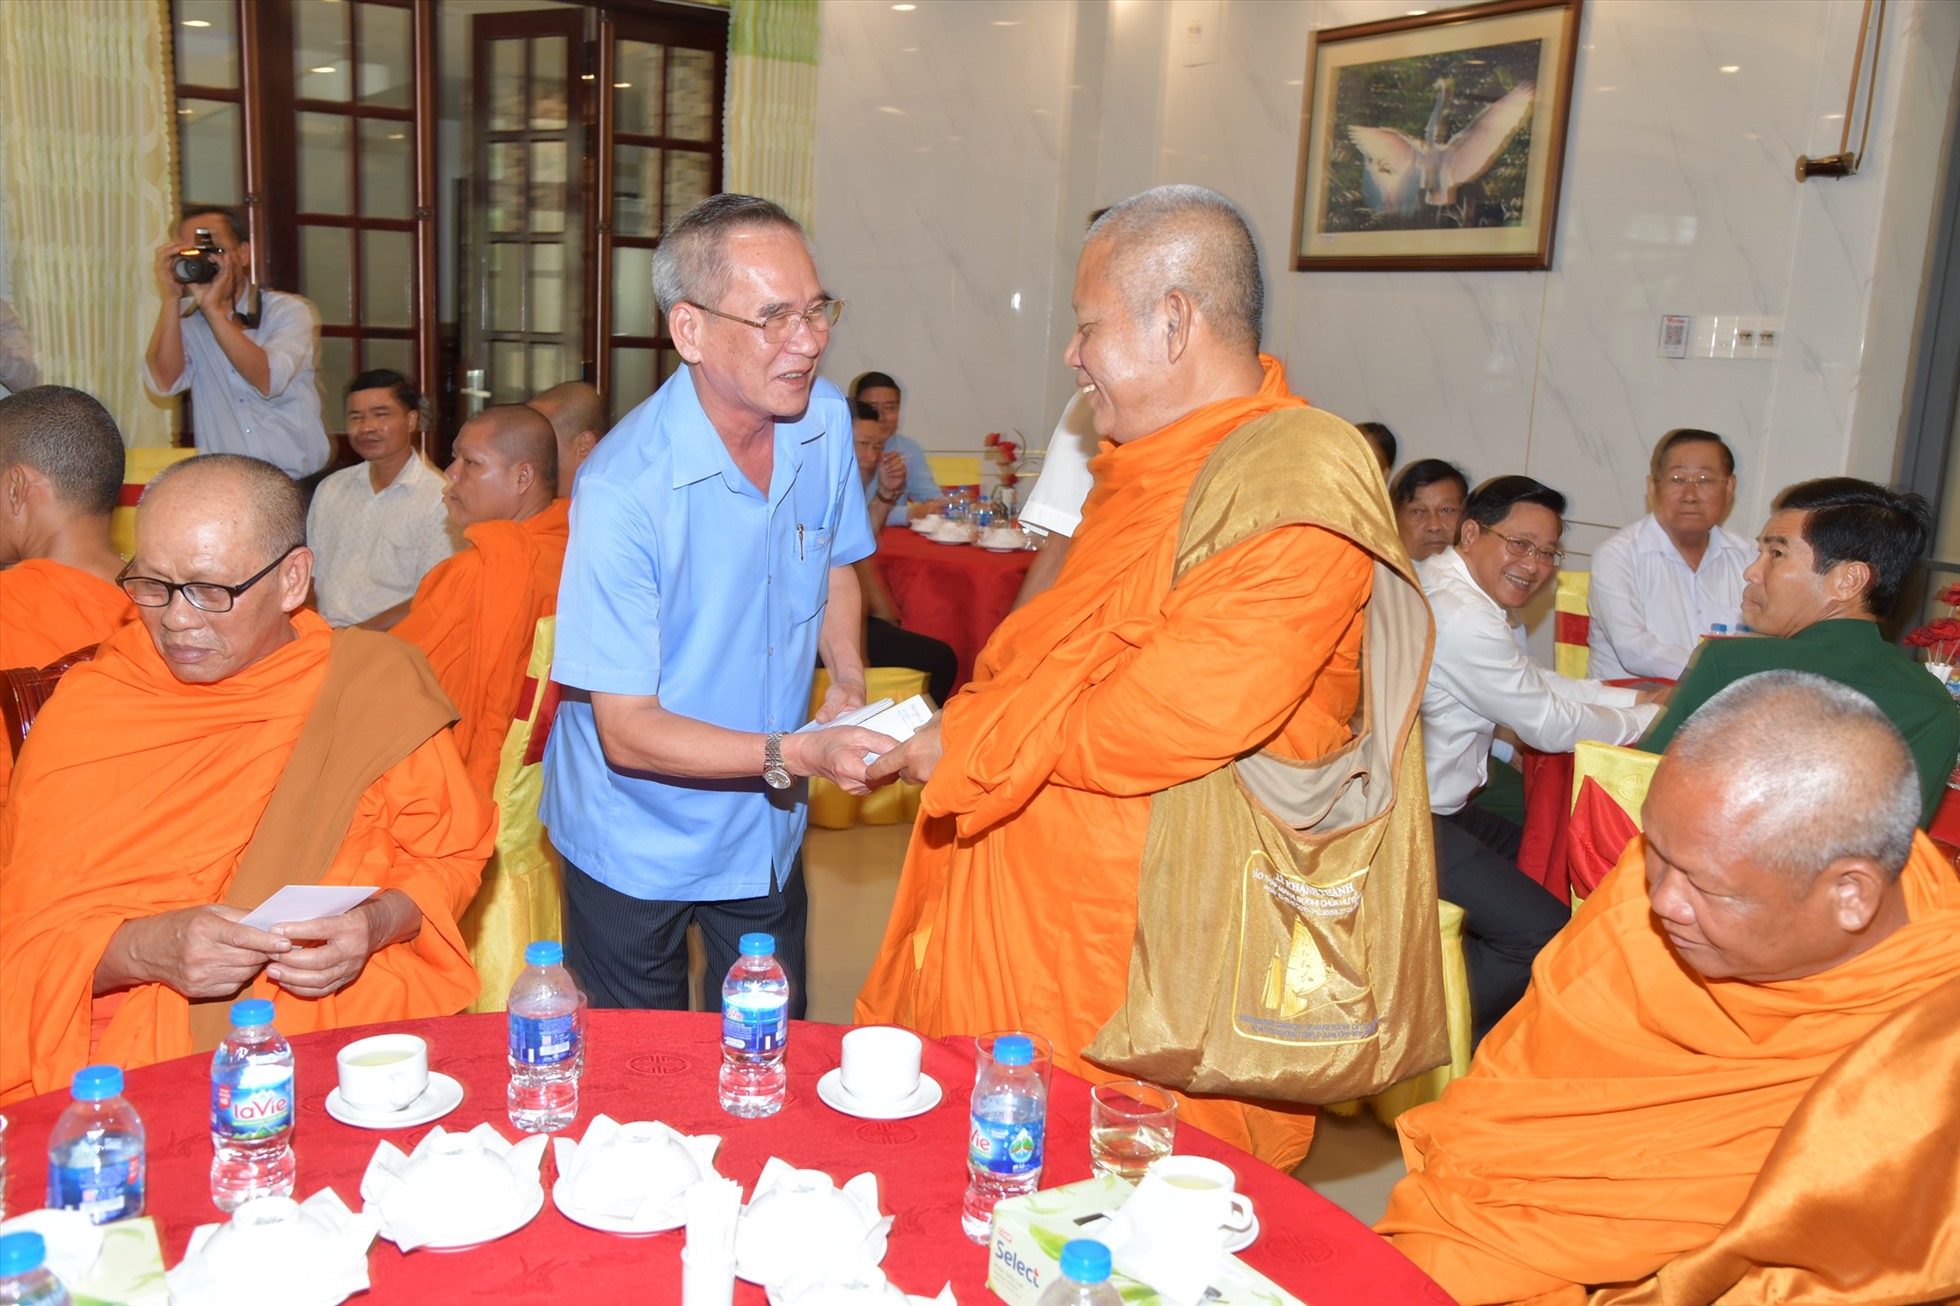 Bí thư Tỉnh ủy Bạc Liêu ân cần thăm hỏi sức khỏe, tặng quà cho các chức sắc tôn giáo, người có uy tín trong đồng bào dân tộc Khmer. Ảnh: Nhật Hồ